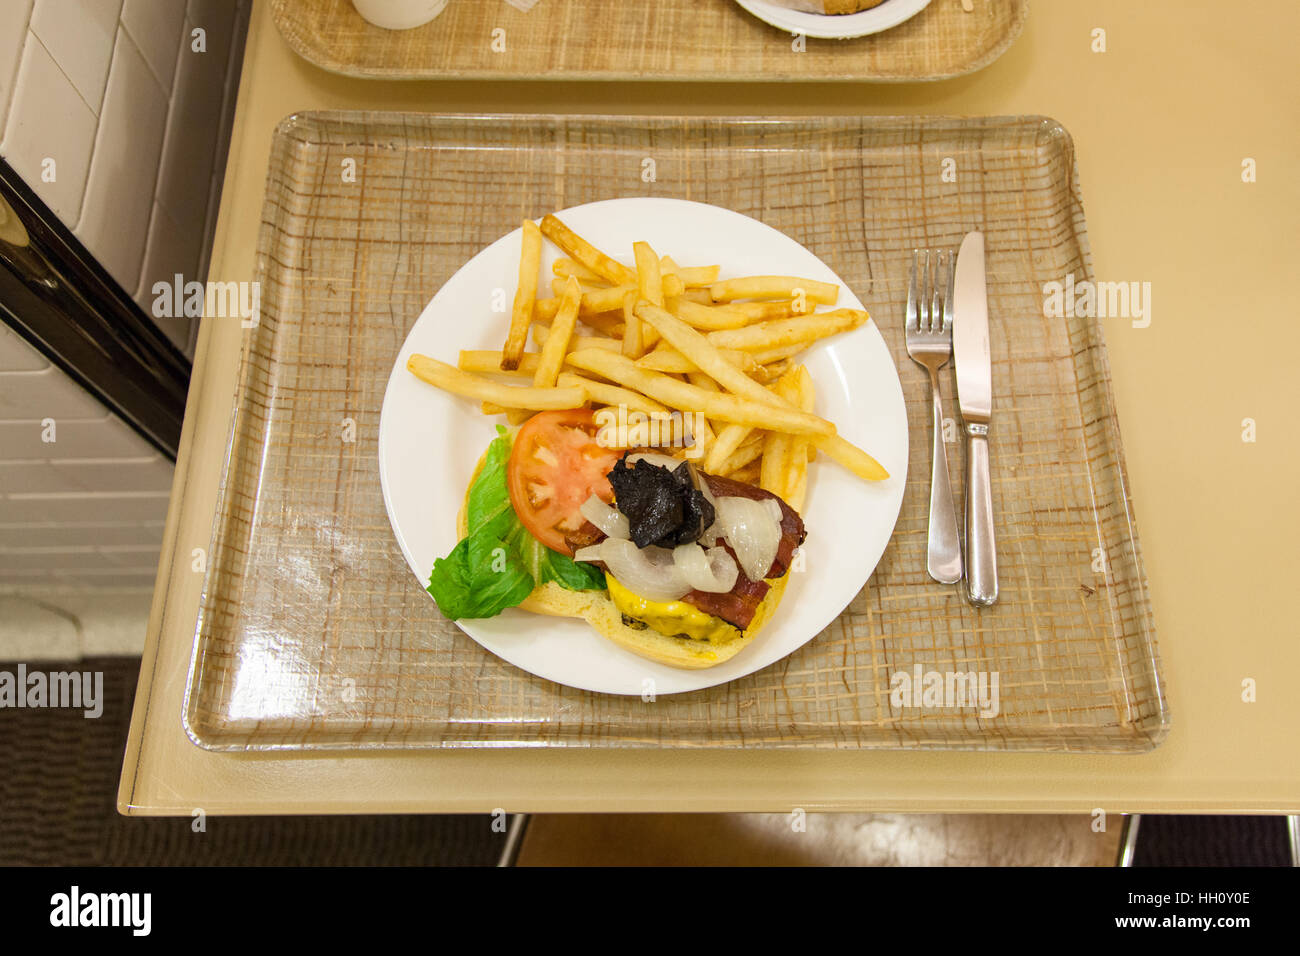 Rindfleisch-Burger und Pommes frites zu The Metropolitan Museum of Art oder Met, fünfte Avenue, New York City, Vereinigte Staaten von Amerika. Stockfoto